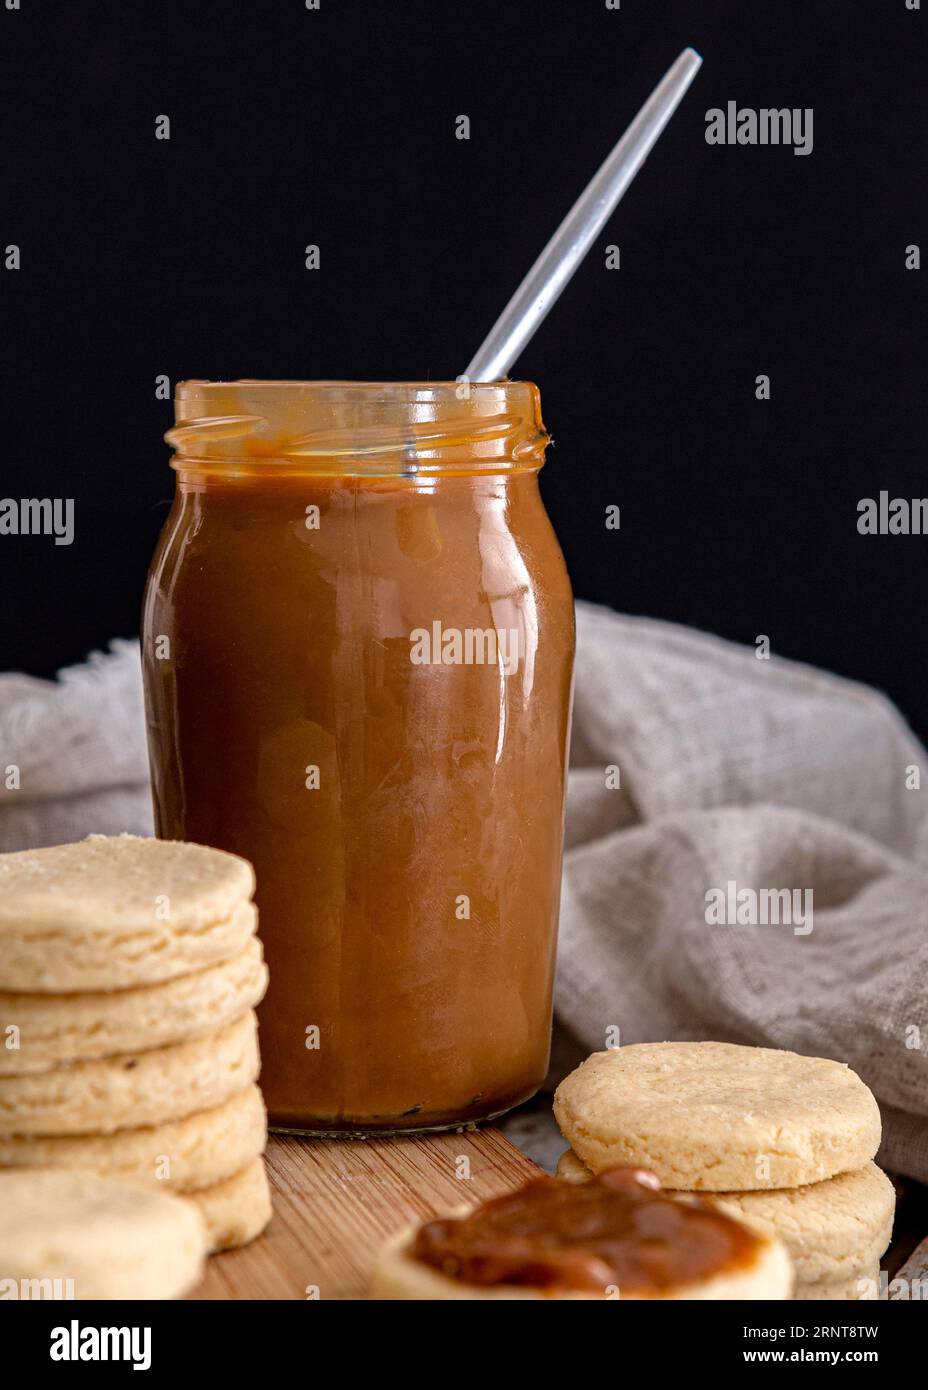 Delicious dulche de leche jar concept Stock Photo